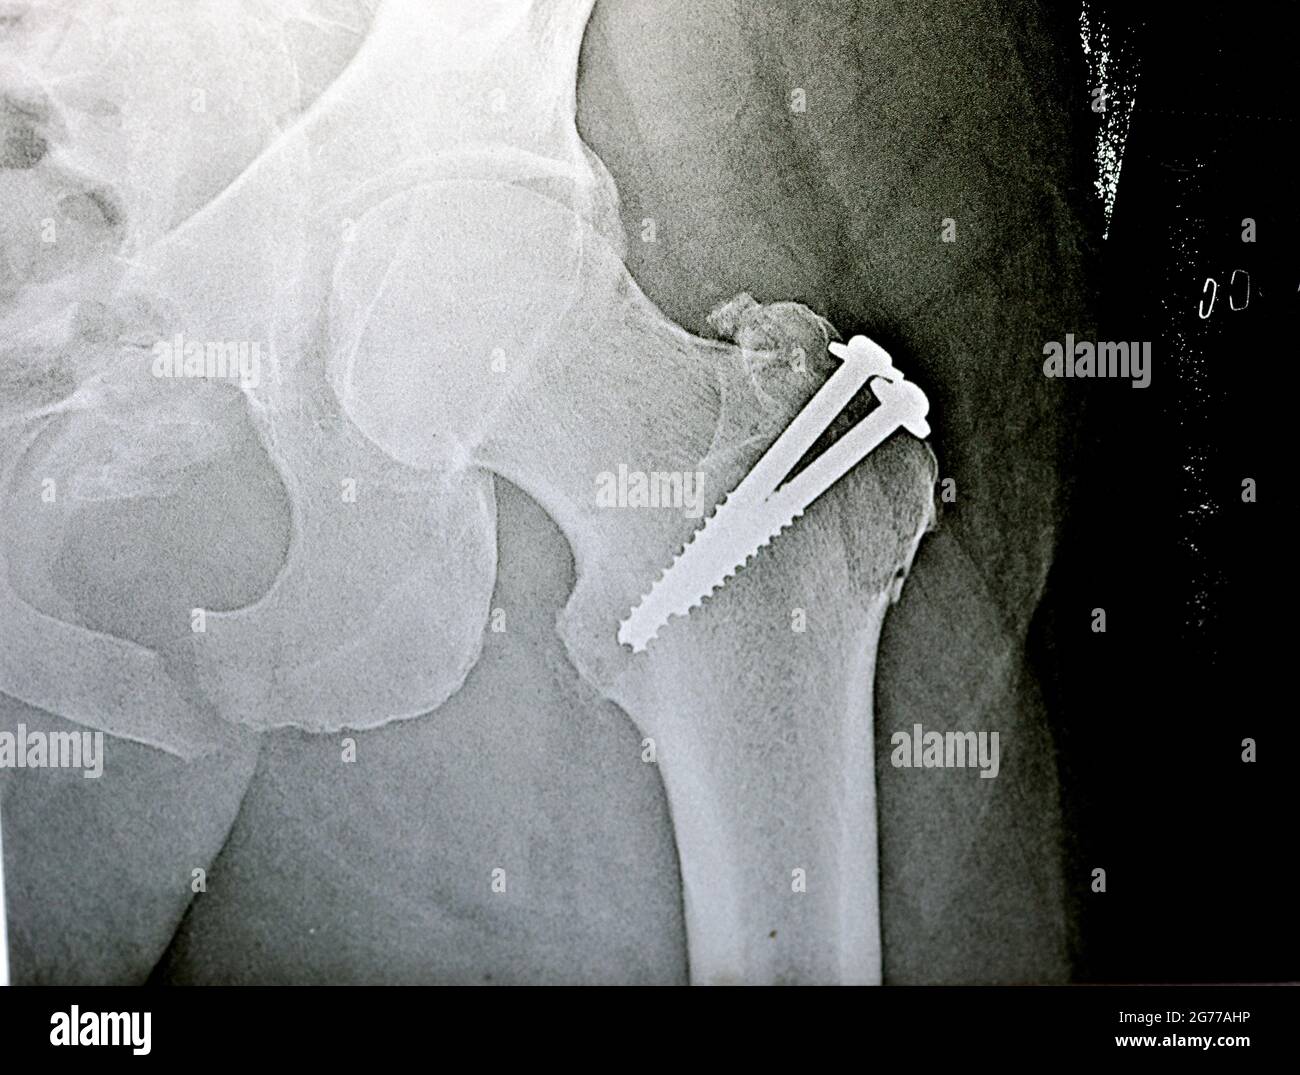 radiografia piana sull'anca sinistra unita a una frattura del grande trocantere del femore fissato con 2 viti in un intervento di riduzione aperta Foto Stock